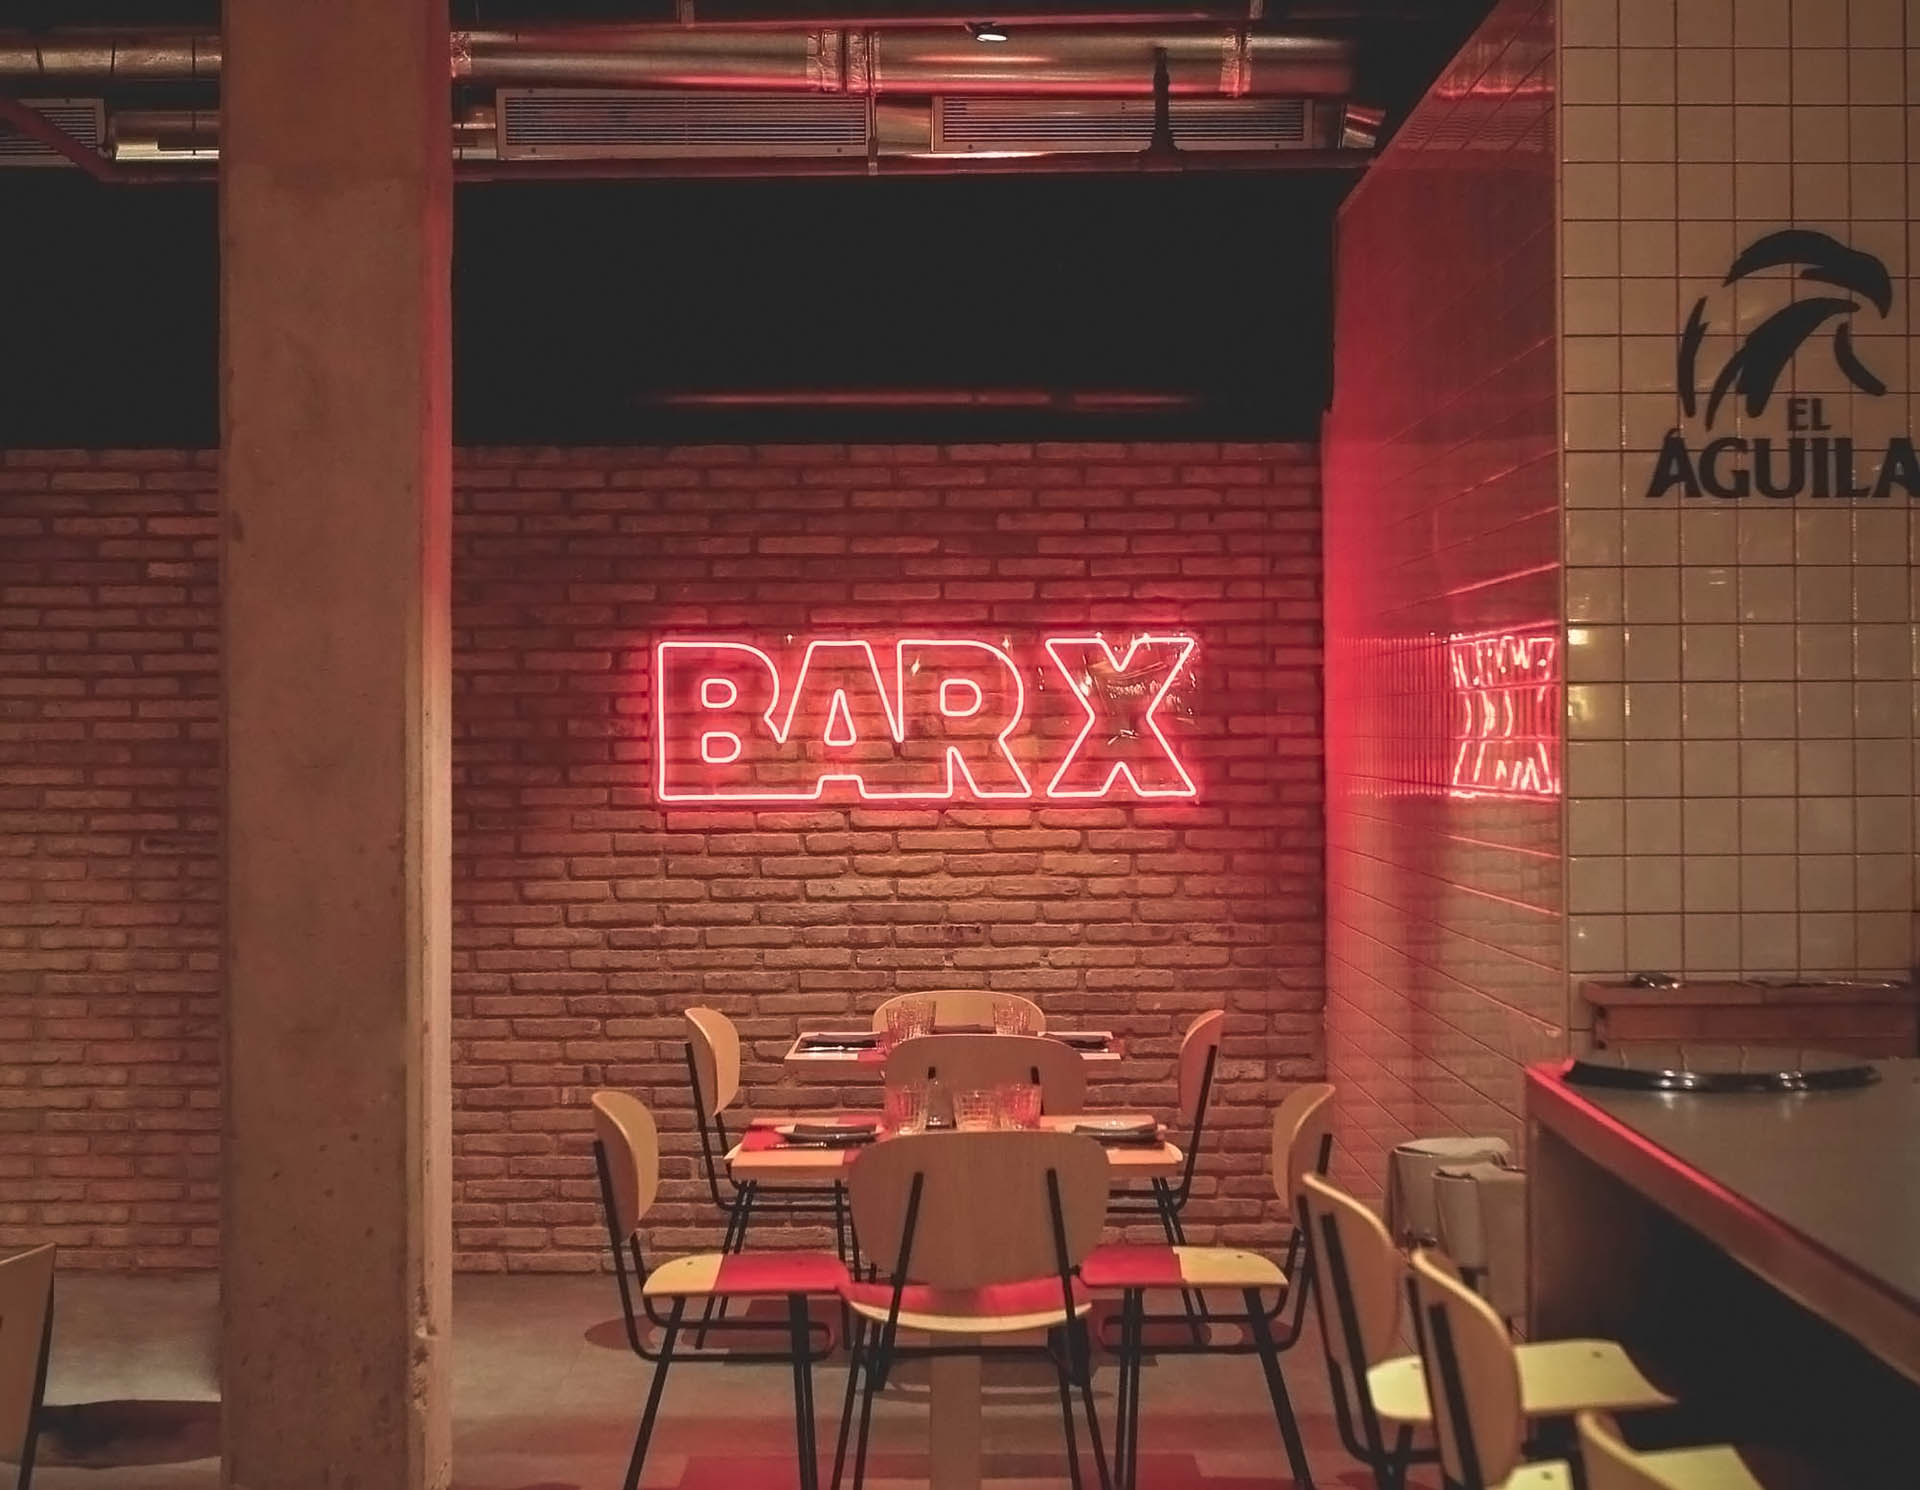 Diseño de identidad e interior para el restaurante Bar X de Ricard Camarena en Valencia